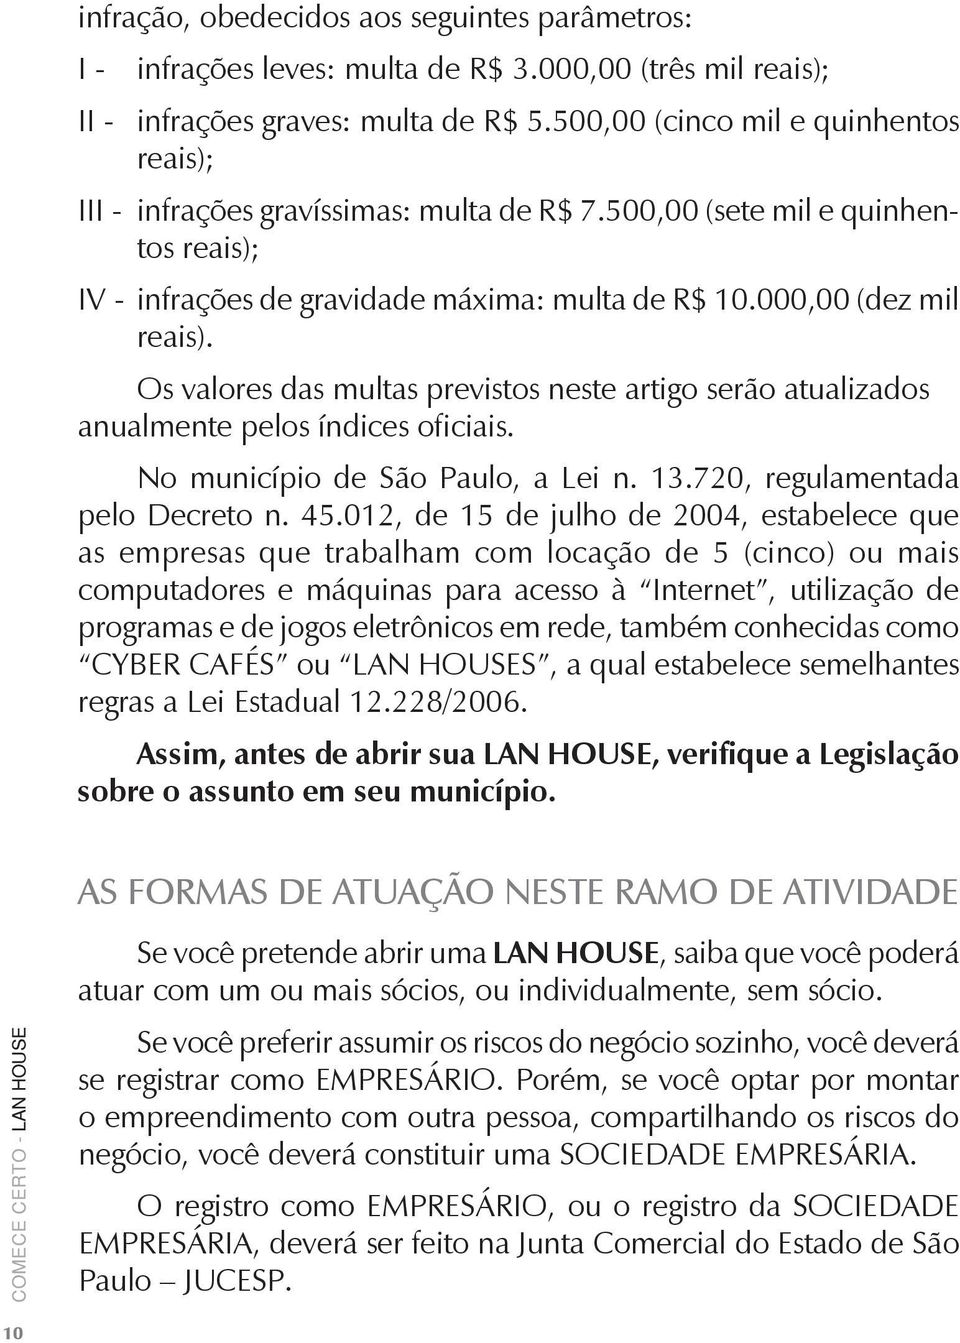 Os valores das multas previstos neste artigo serão atualizados anualmente pelos índices oficiais. No município de São Paulo, a Lei n. 13.720, regulamentada pelo Decreto n. 45.